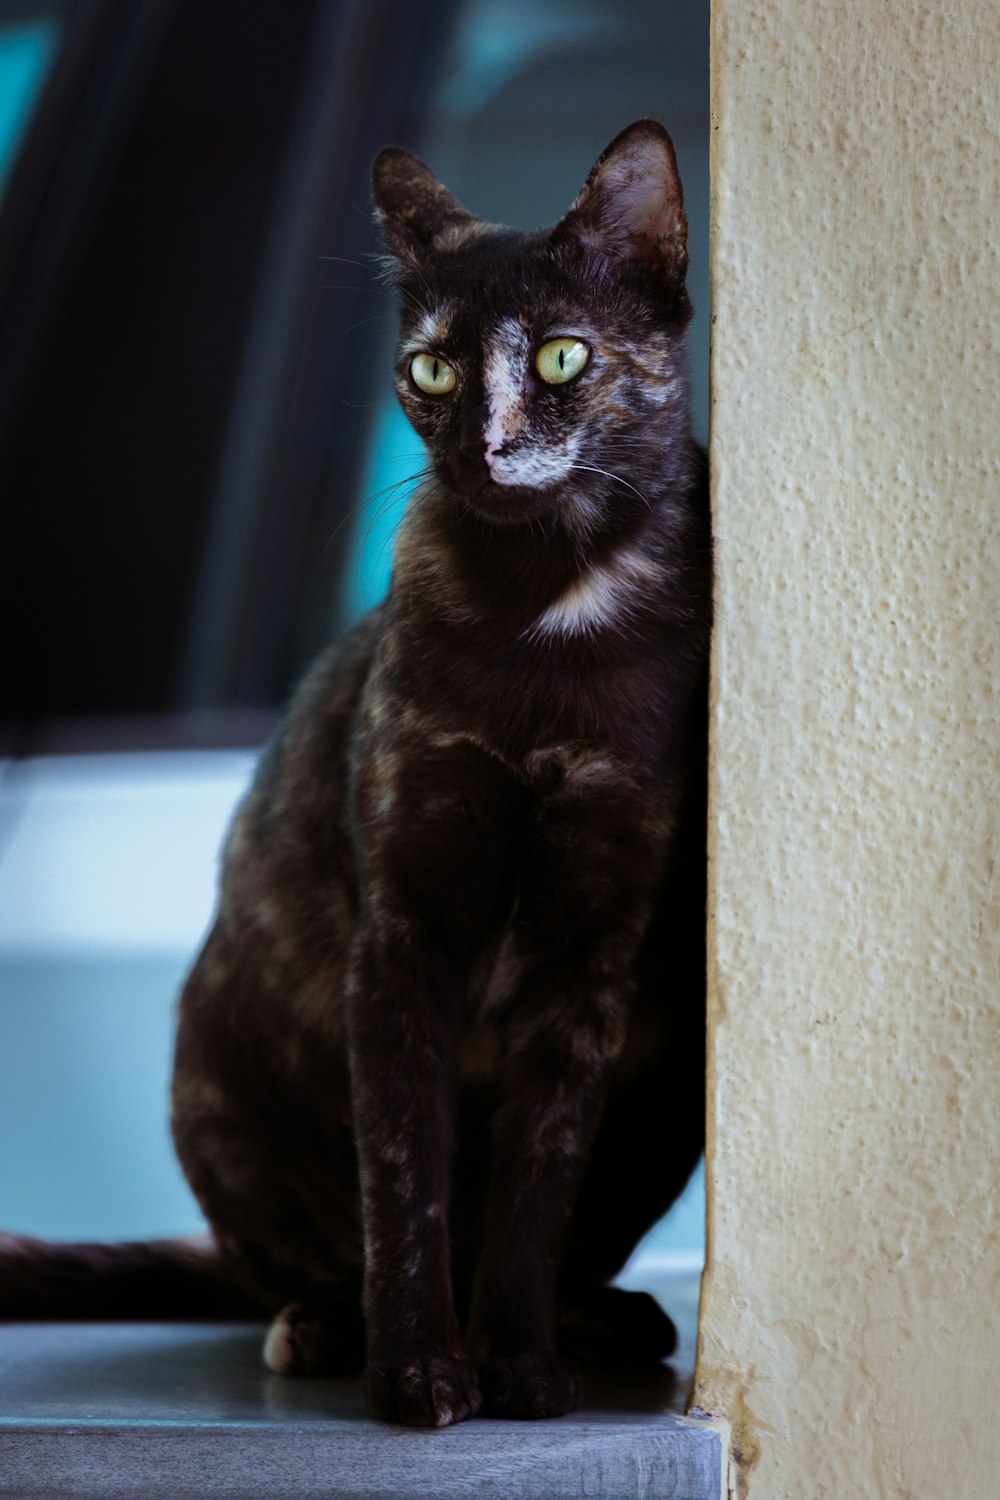 a black cat sitting on a window sill